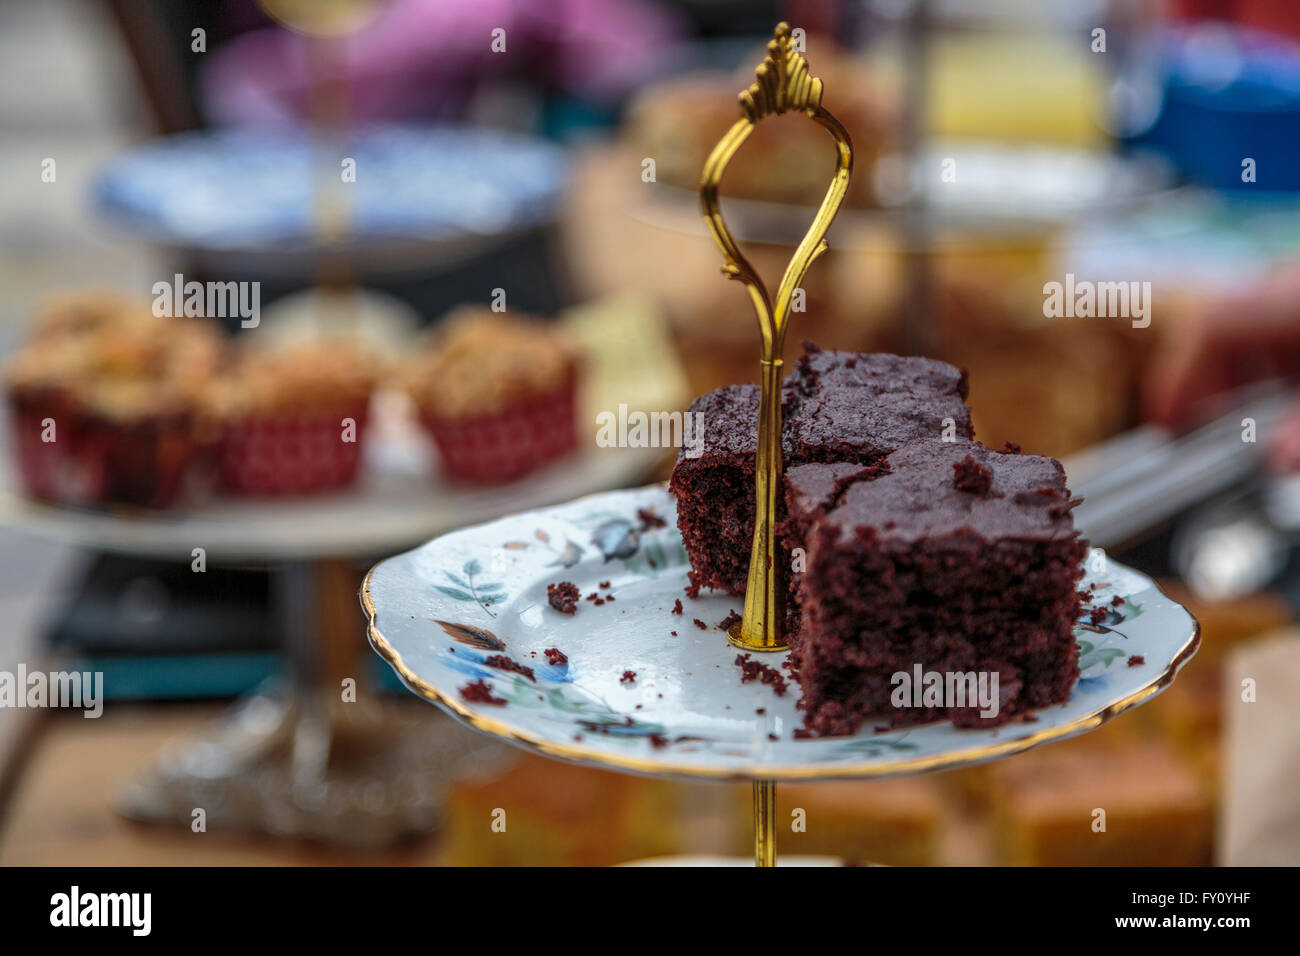 Ein hausgemachtes Stück Schokolade Brownie Kuchen auf einen reich verzierten China servieren Schüssel Wth gold Griff Stockfoto